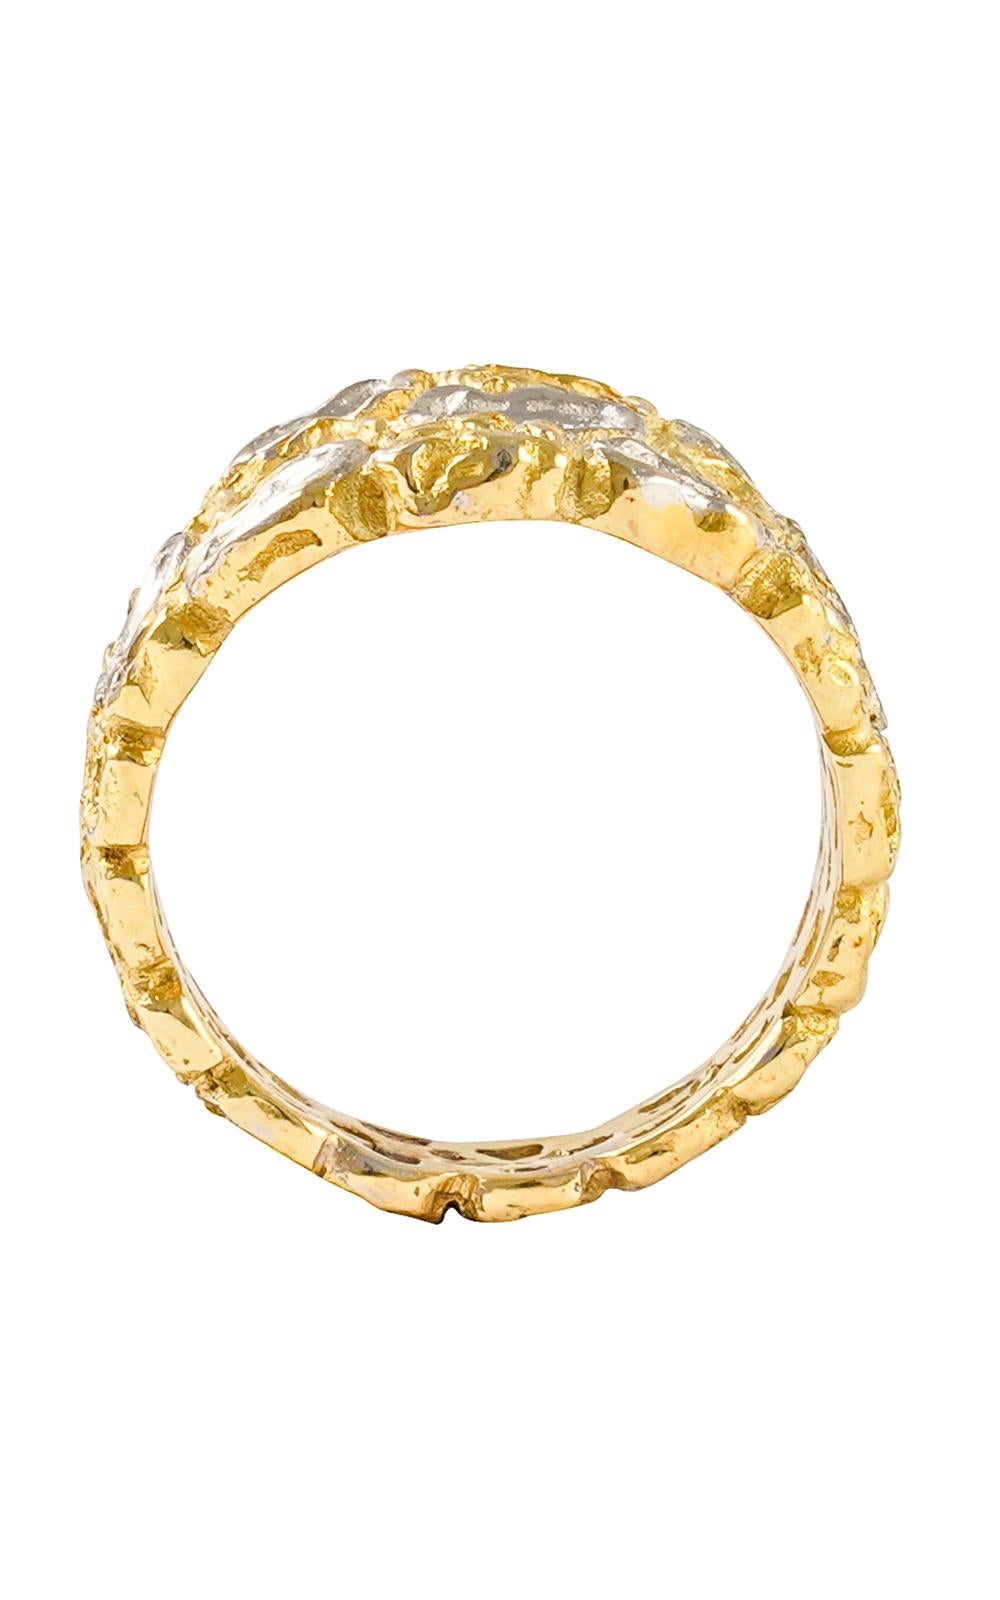 Jolie bague en or jaune 18 carats avec inserts pavés de diamants.  Anneau de mode, fabriqué à la main avec la technique de la cire perdue.

La fonte à la cire perdue, l'une des plus anciennes techniques de création de bijoux, constitue la base de la